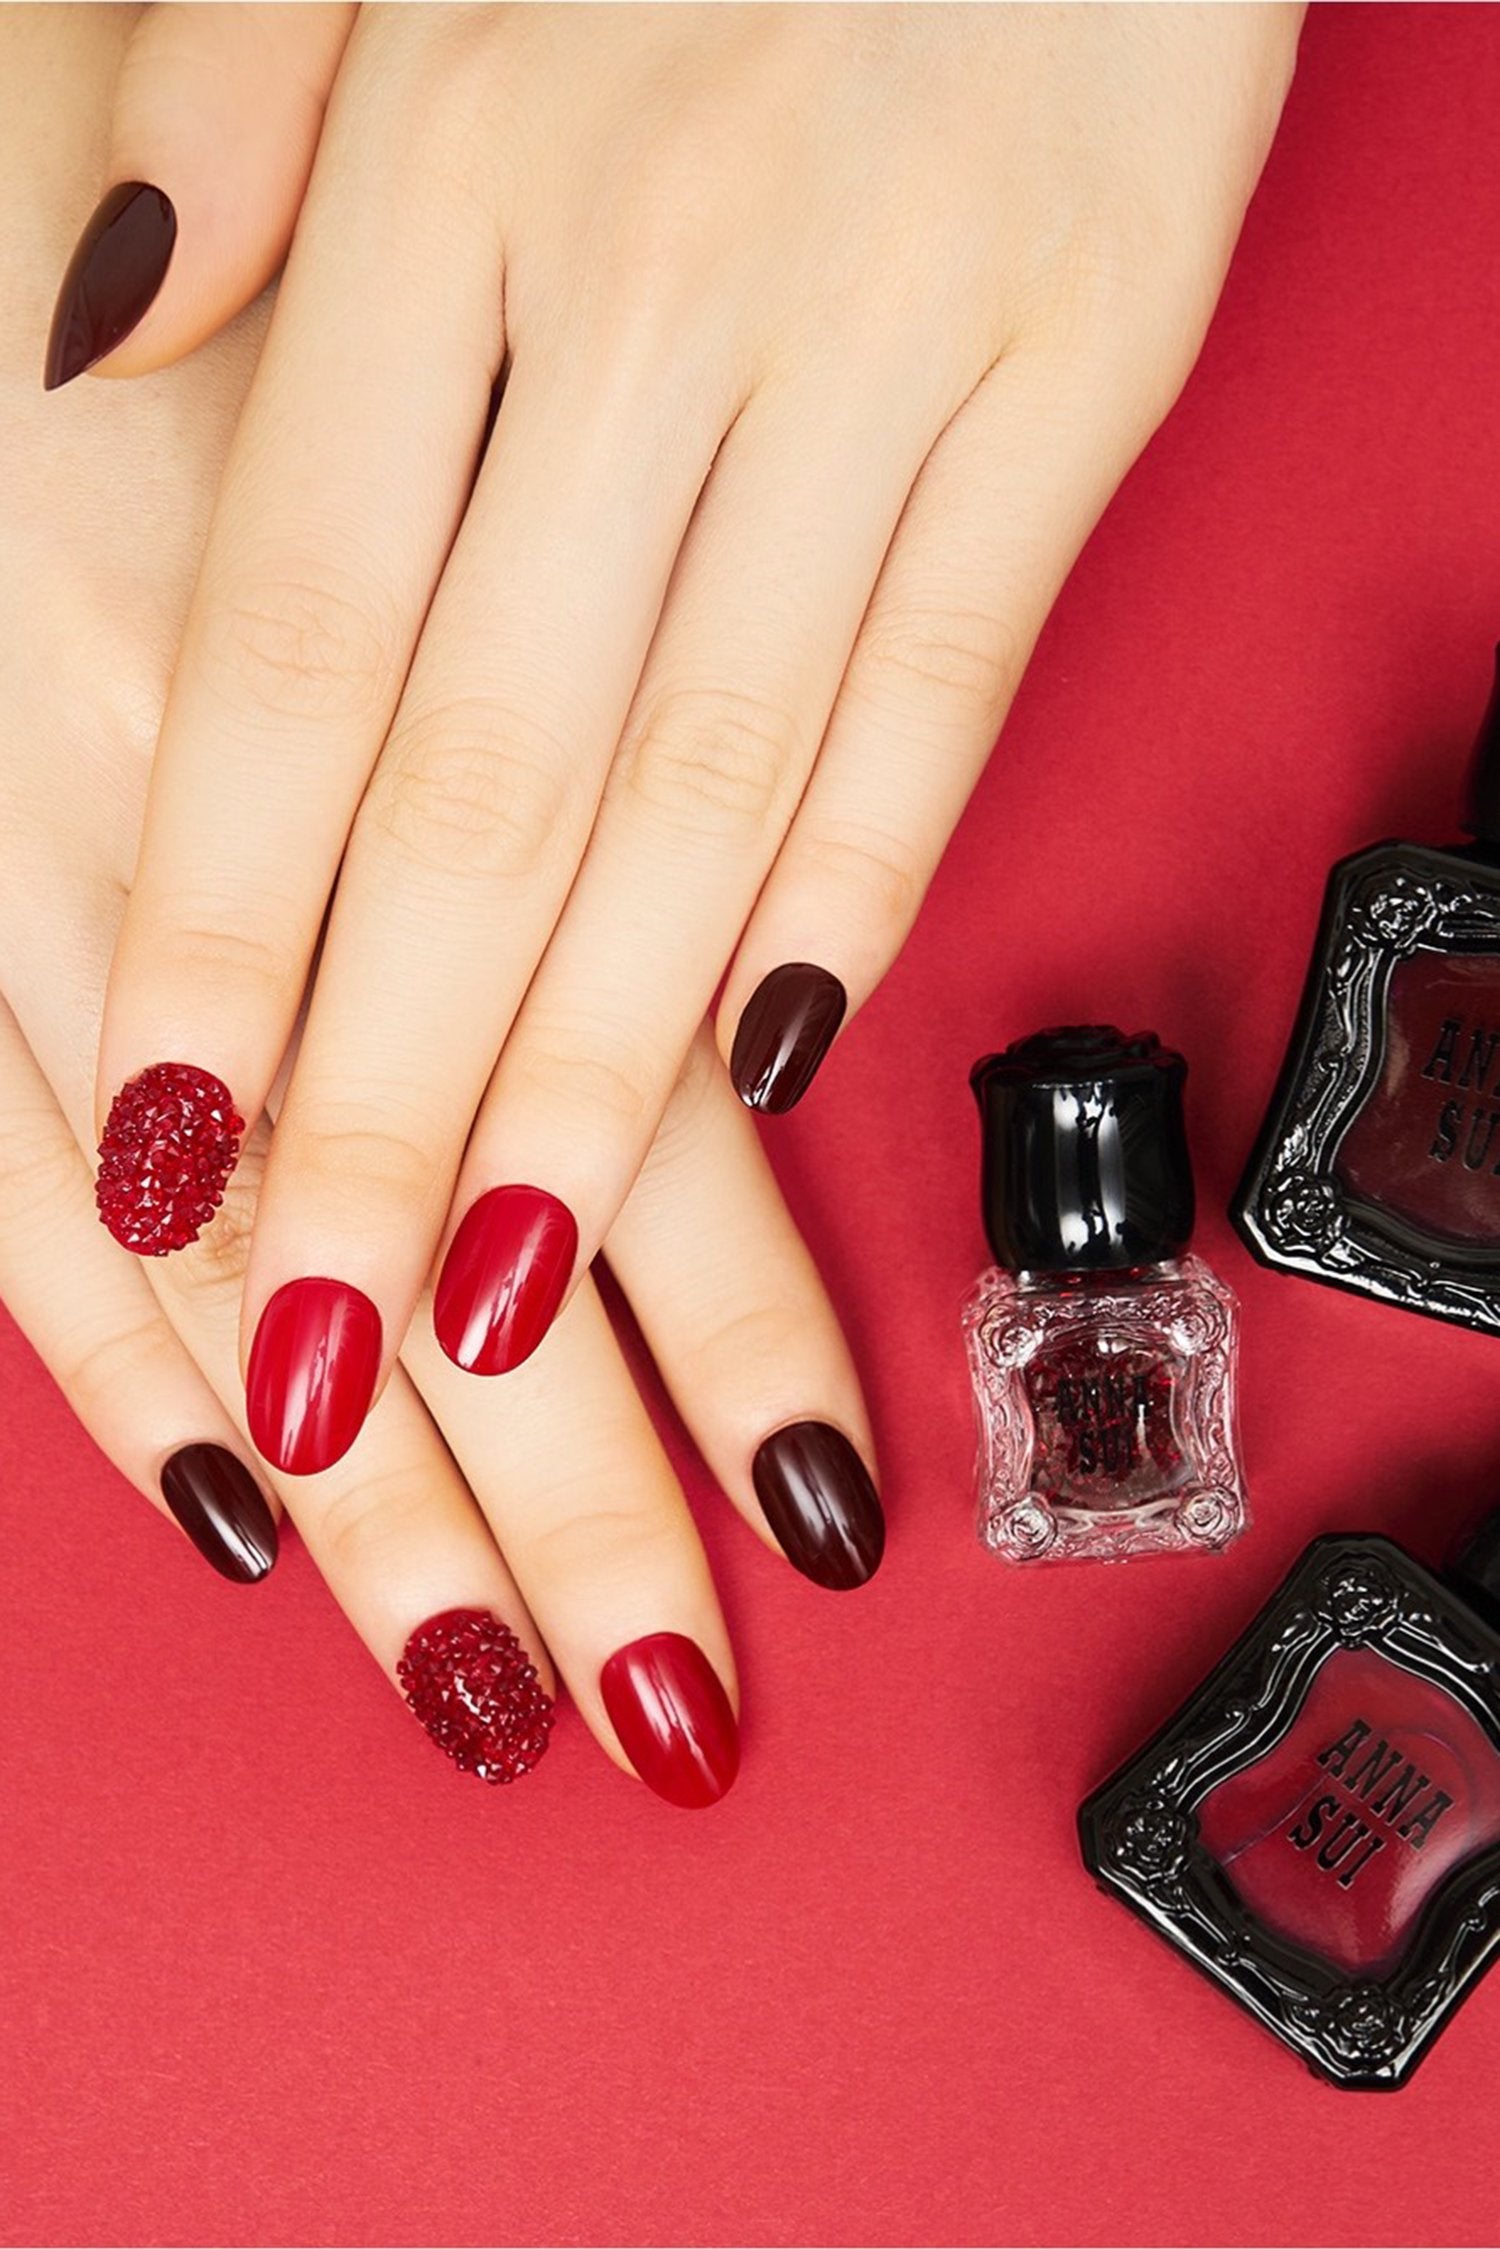 red pink color nail polish | Nail colors, Pretty nails, Colorful nail  designs